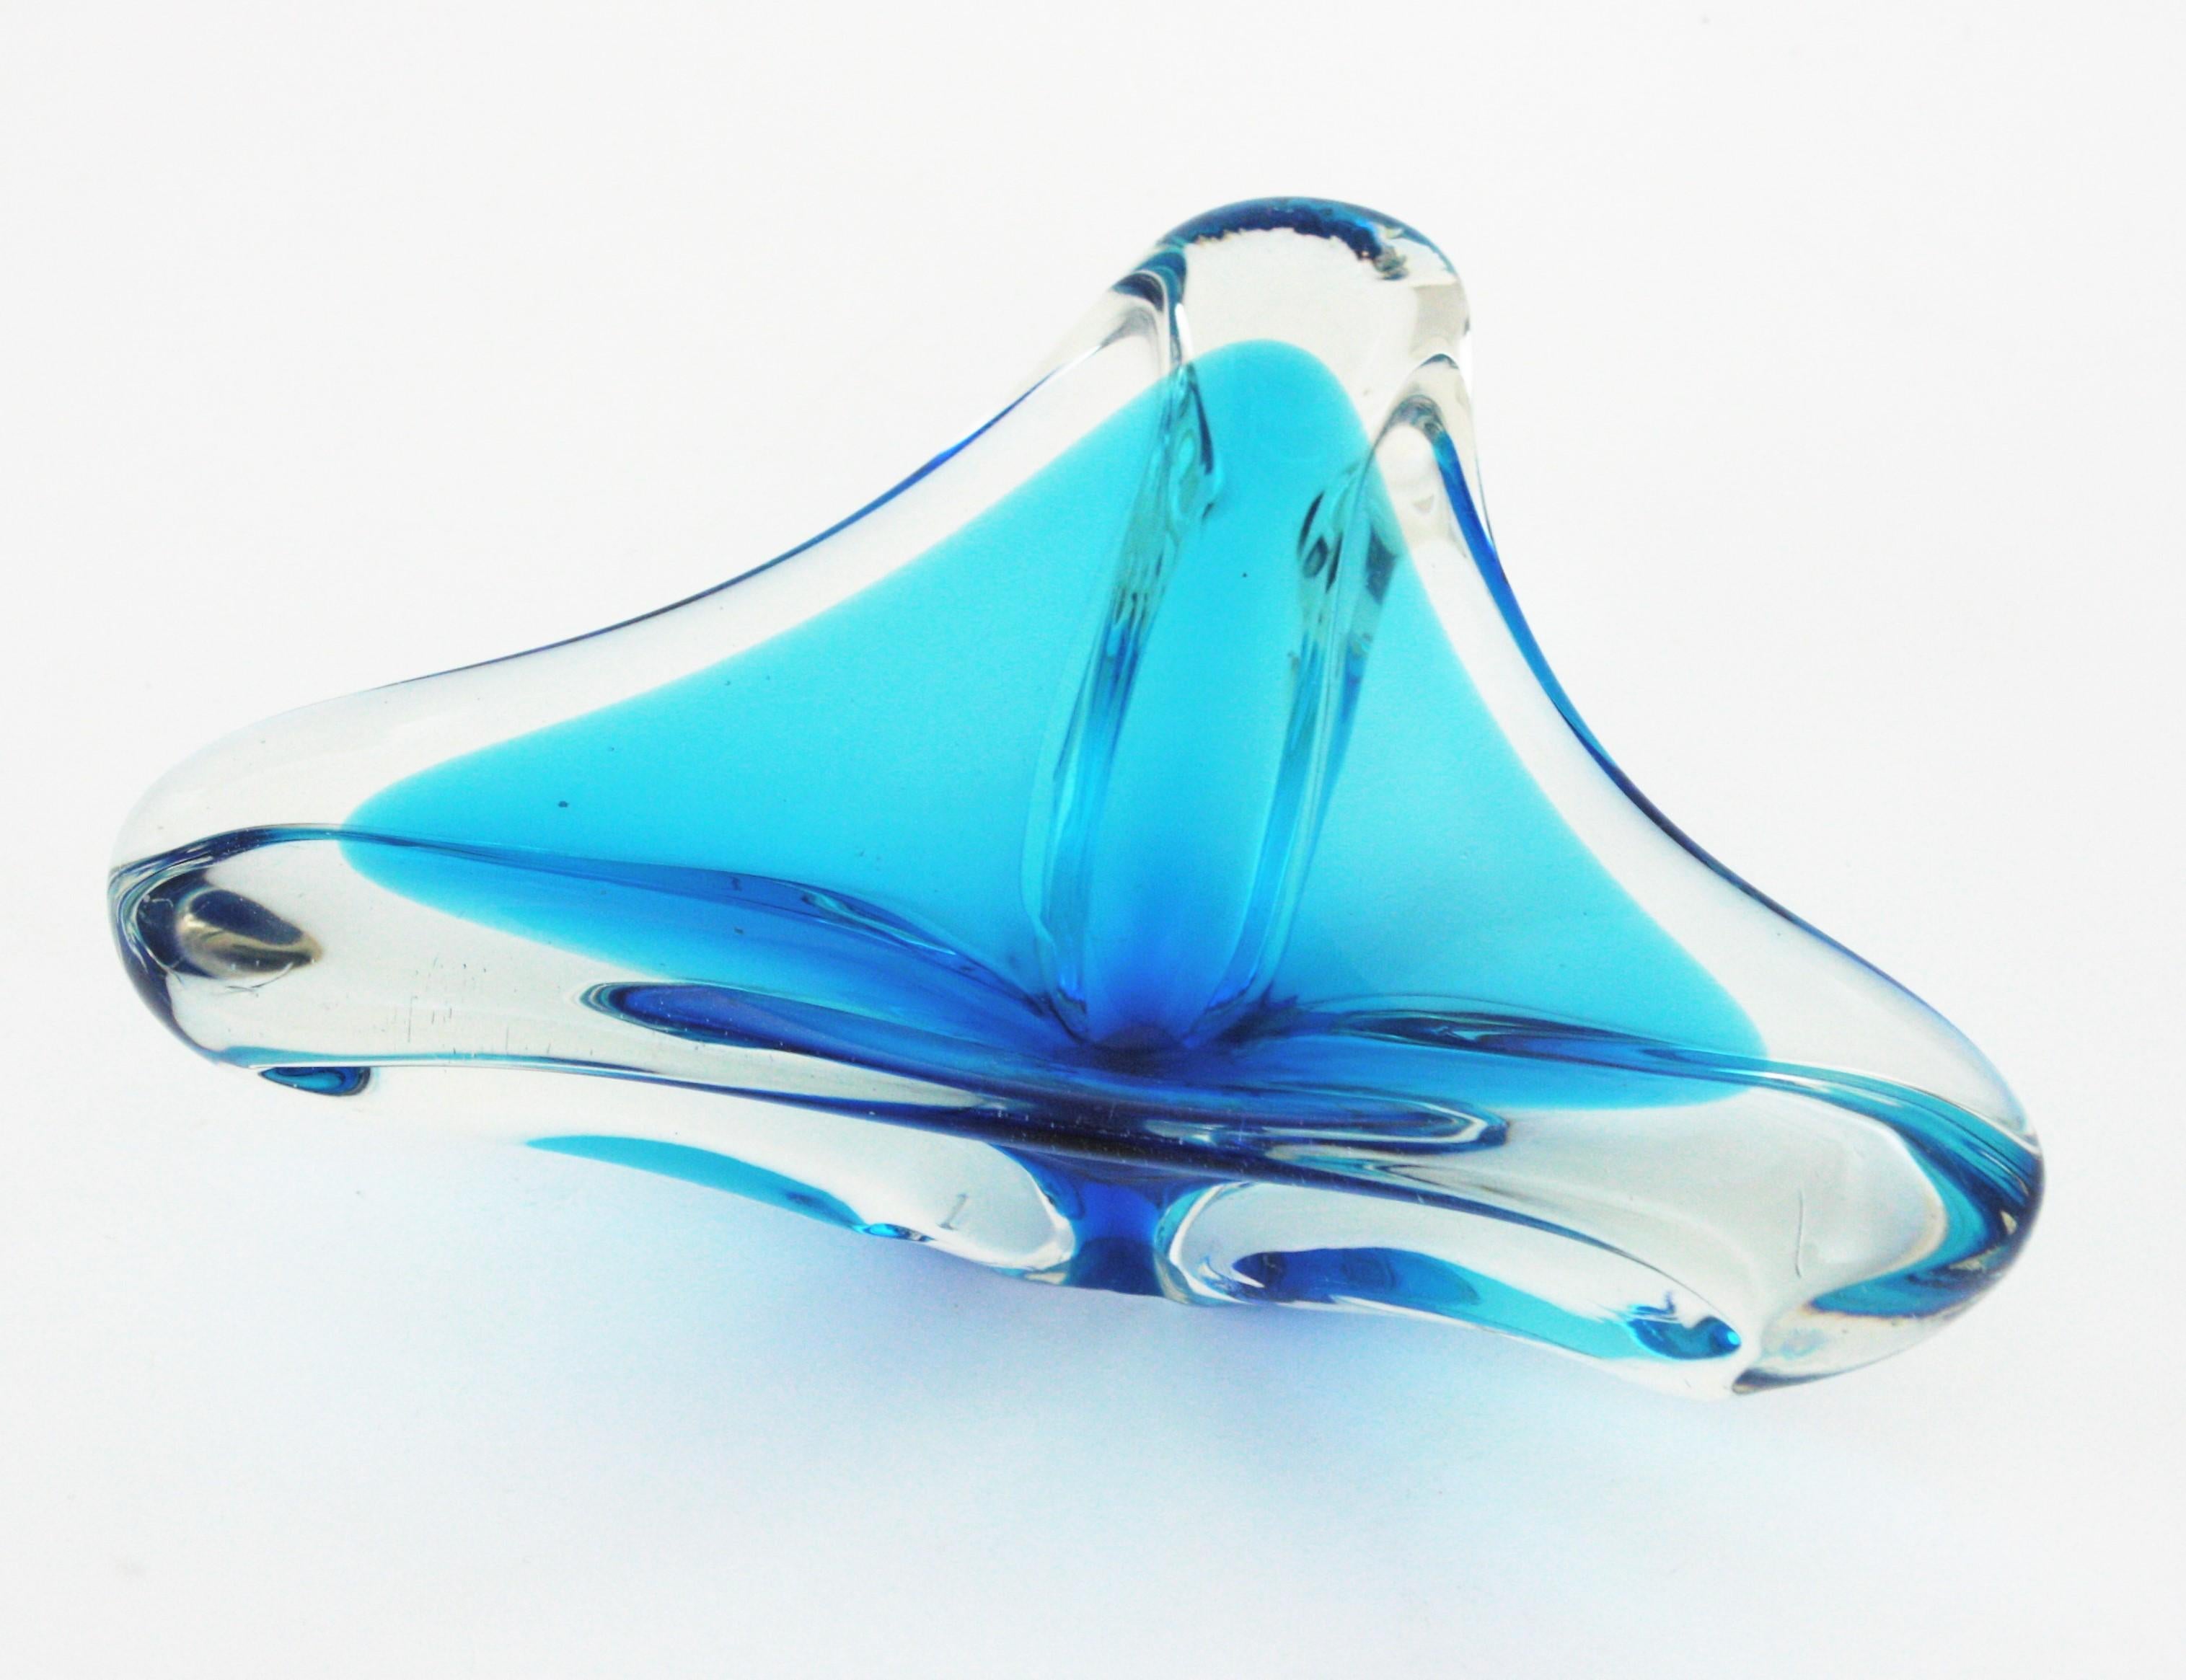 Aquablaues organisches Muranoglas Sommerso Schale/Aschenbecher/Videopoche, Italien, 1950er Jahre.
Eine hochdekorative mundgeblasene dreieckige Schale aus Murano-Kunstglas mit aquablauem Glas in Klarglas eingefasst.
Verwenden Sie es als